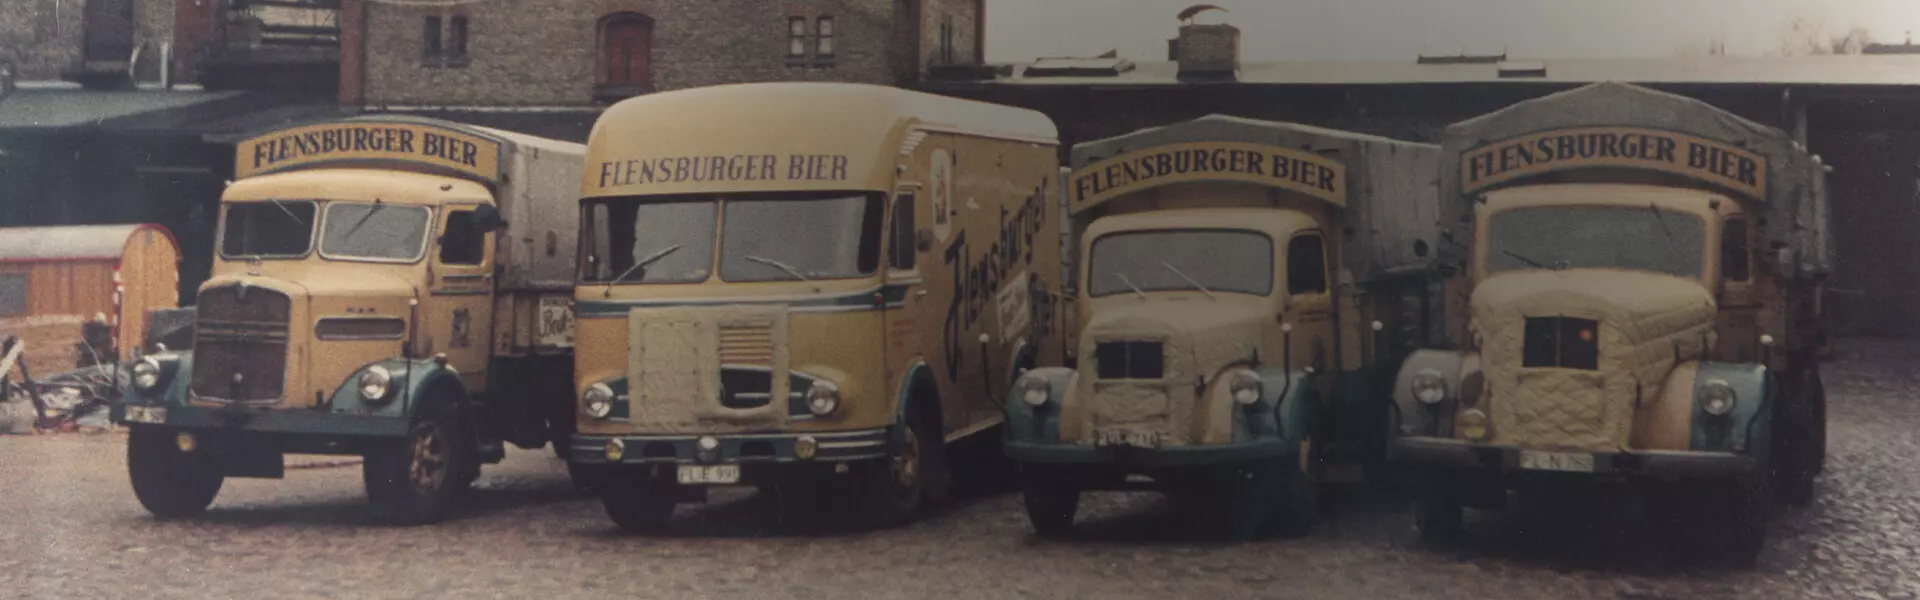 Flensburger Brauerei Chronik: historische Abbildung Lieferwagen